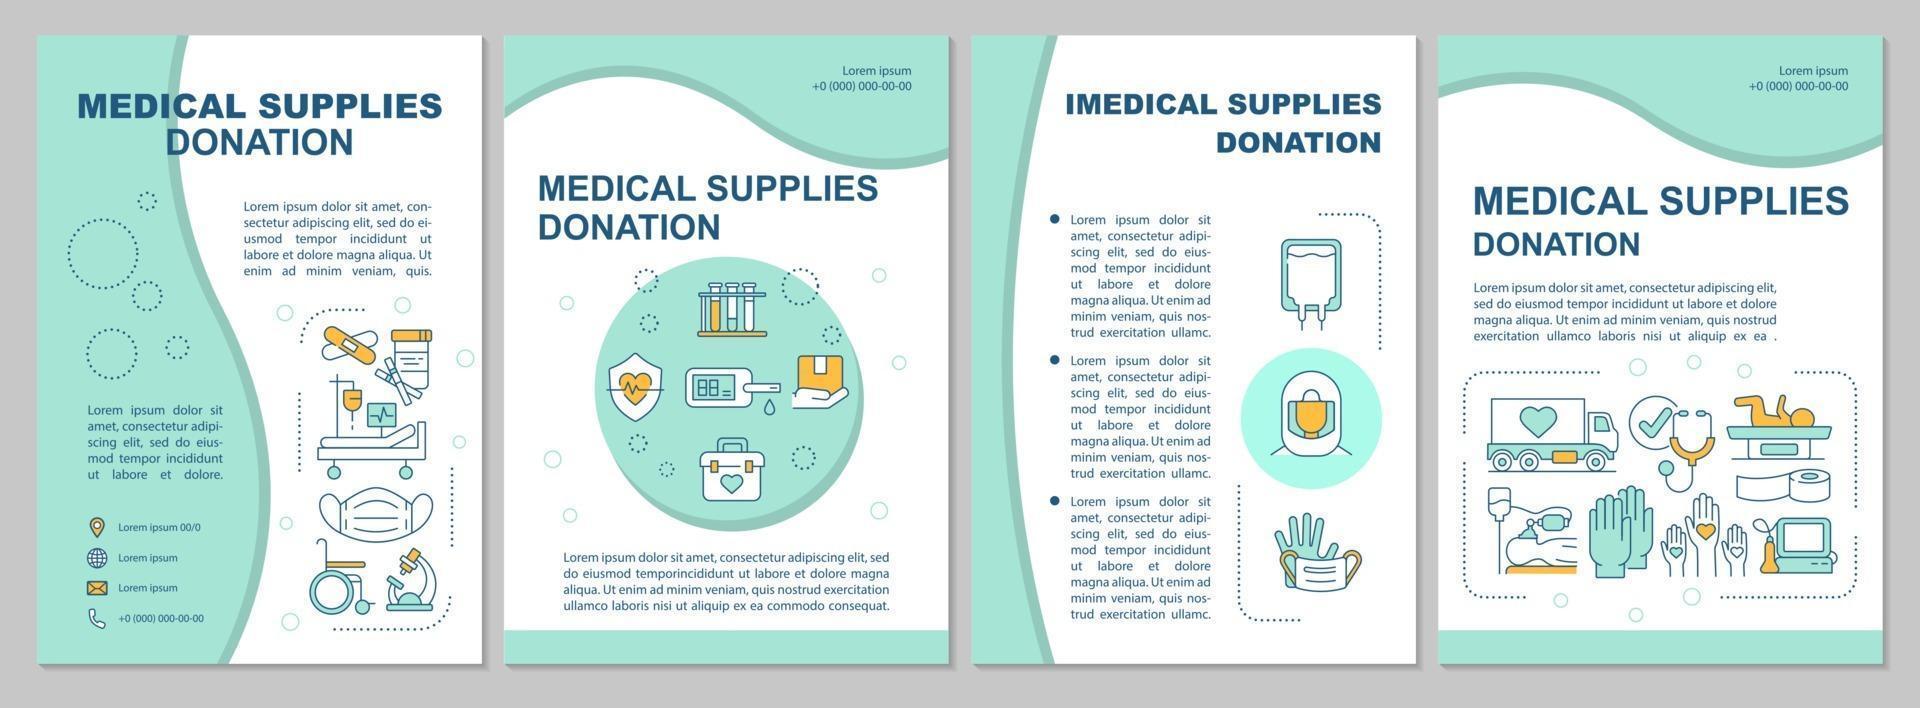 Broschüre für eine Wohltätigkeitsbroschüre für medizinische und medizinische Versorgung. vektor